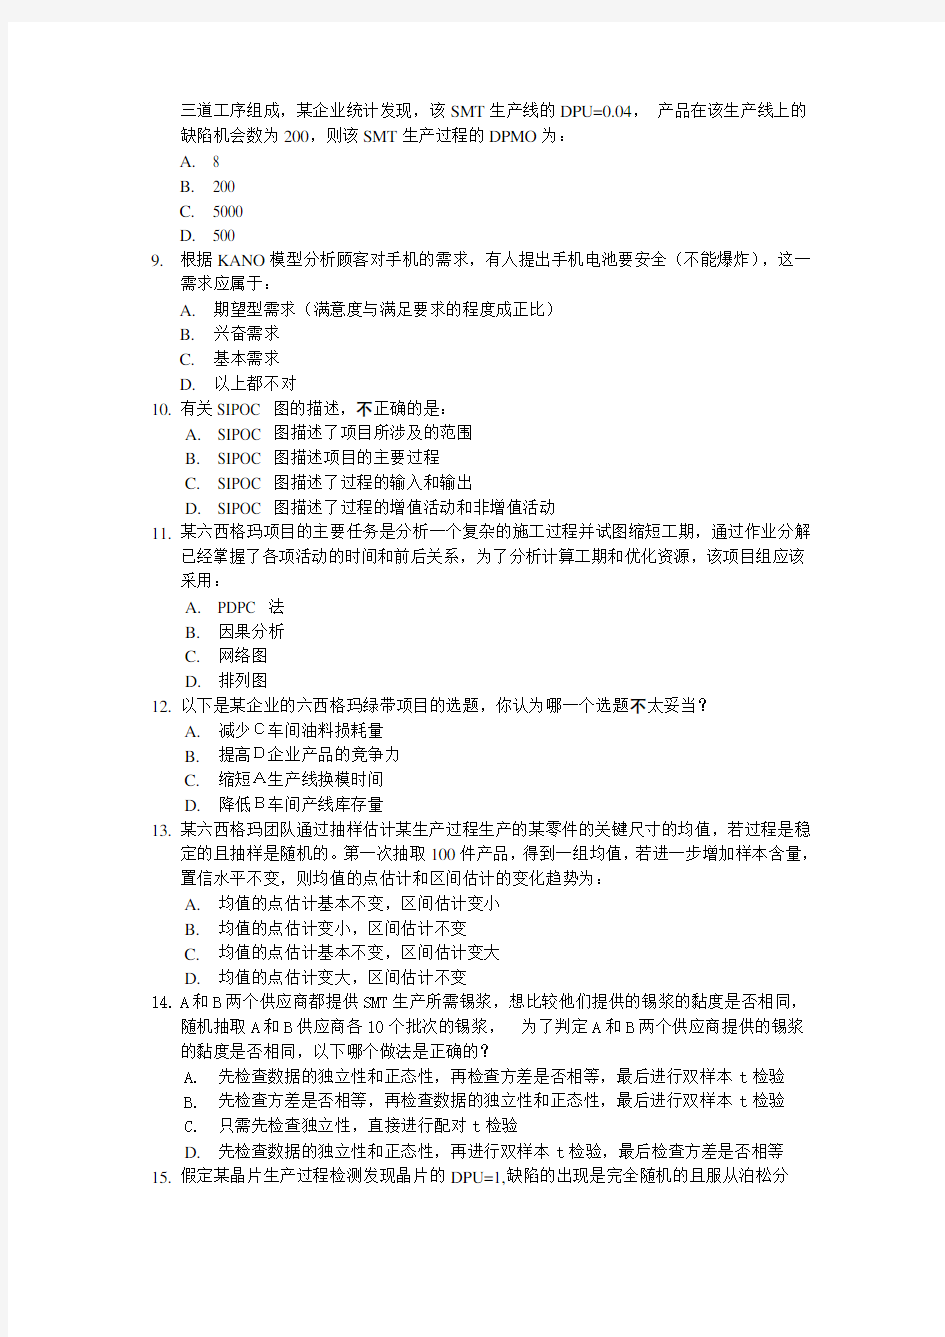 中国质量协会注册六西格玛绿带考试样题-考试注册管理系统